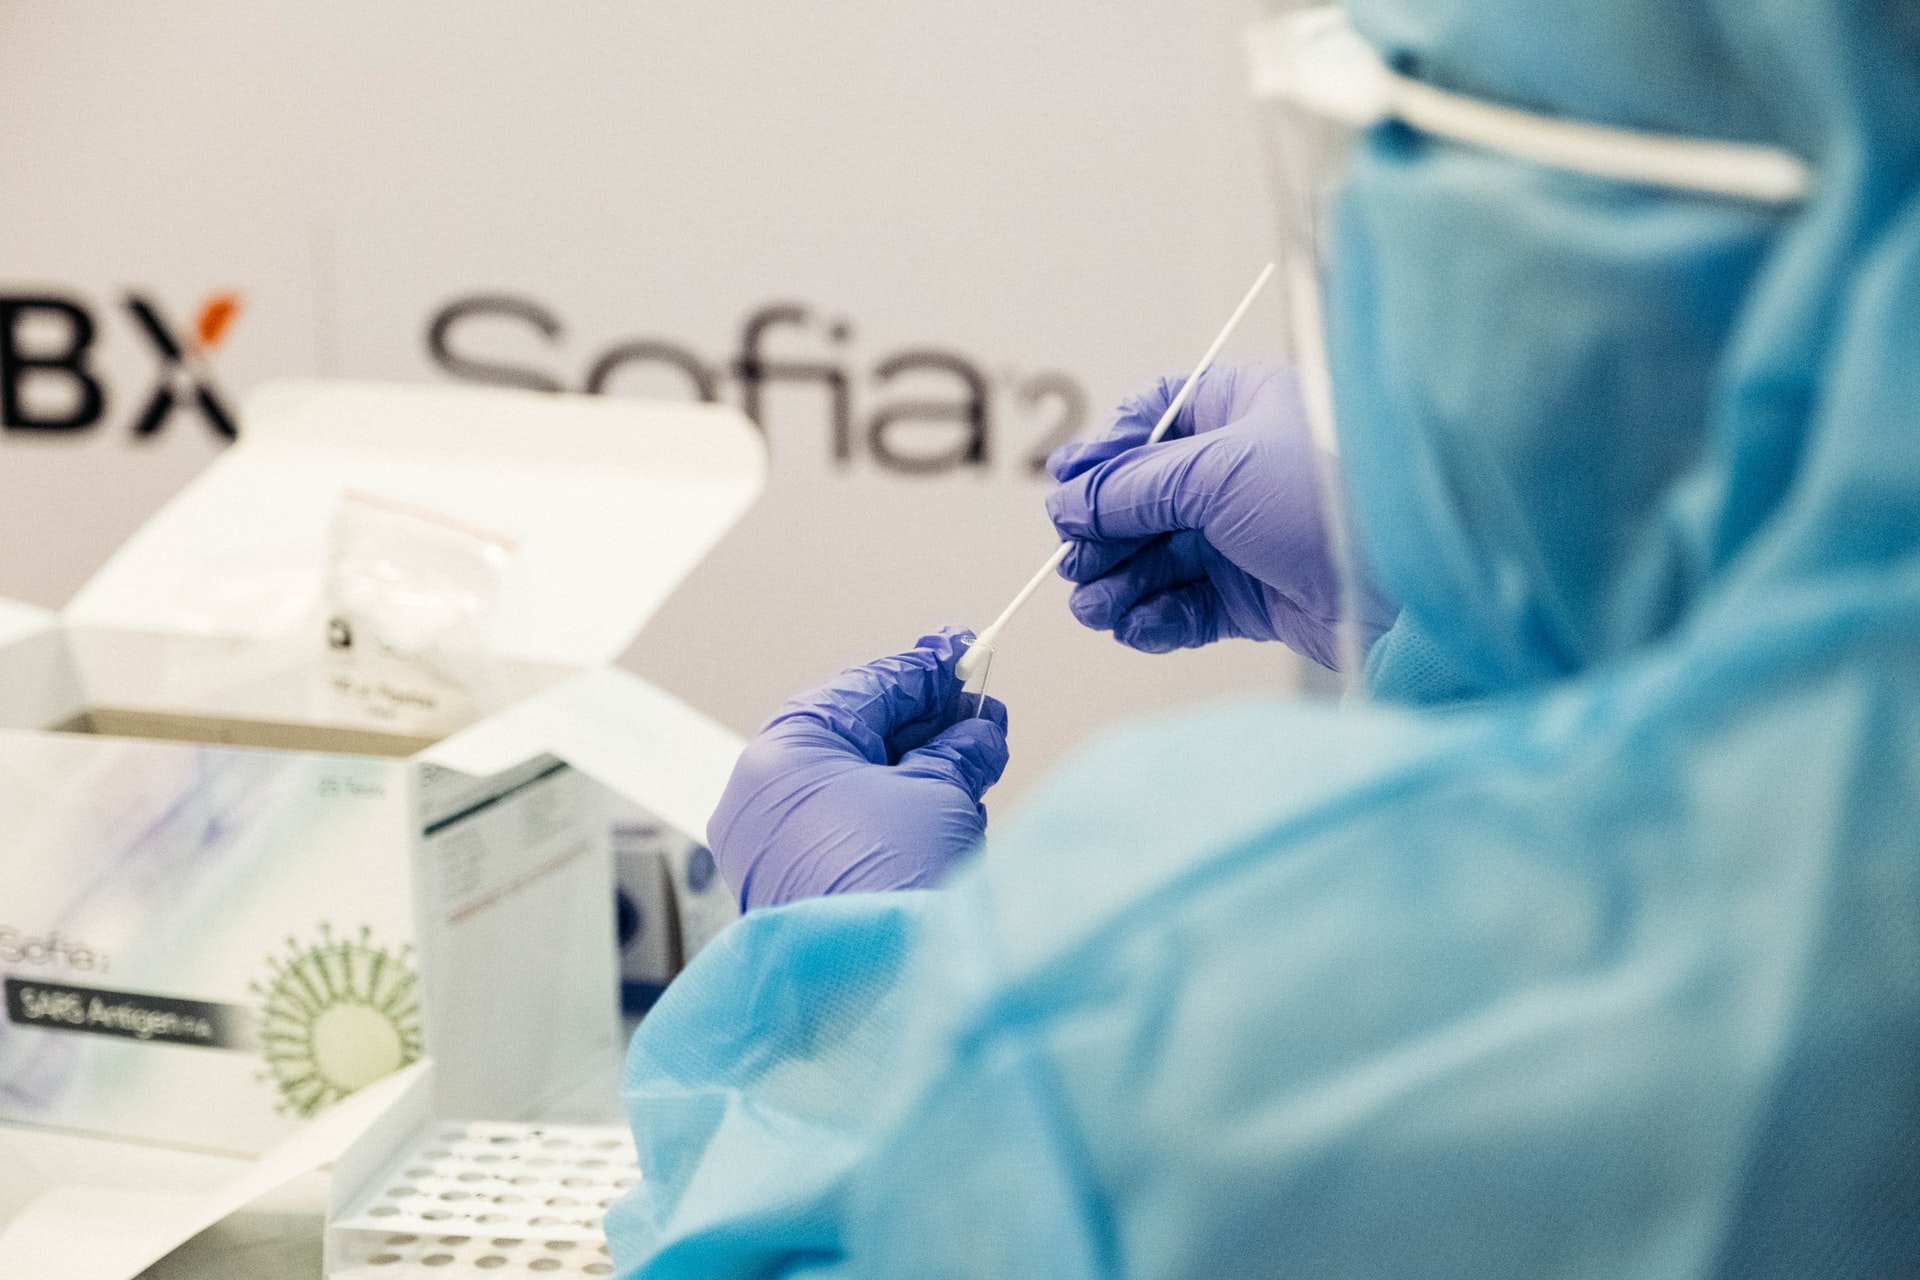 V Avstriji brezplačno PCR testiranje tudi v lekarnah, kmalu tudi pri zdravnikih?